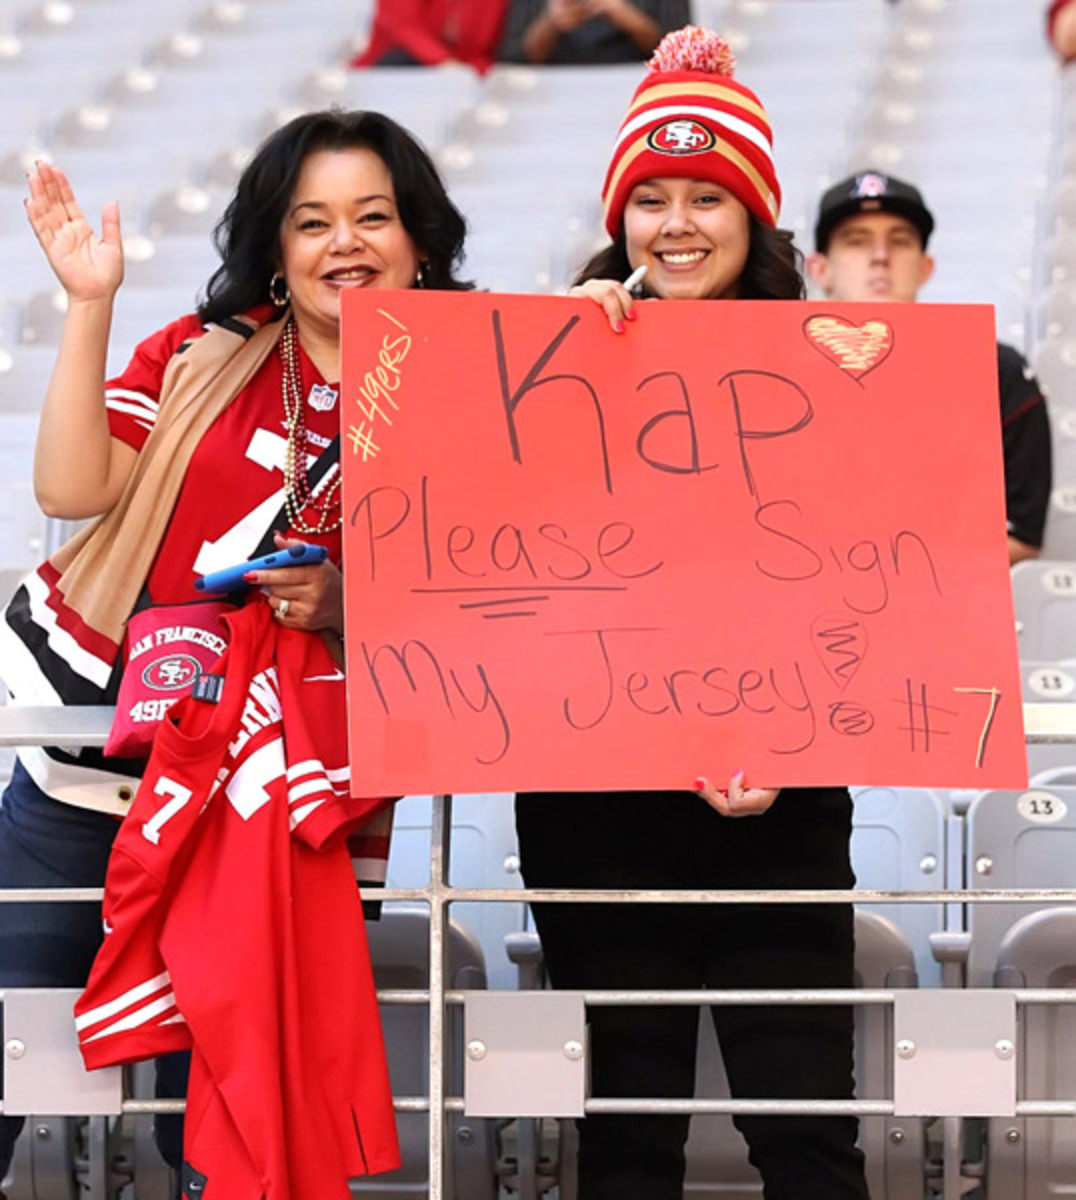 cardinals_49ers_fan_signs-a08x9337.jpg